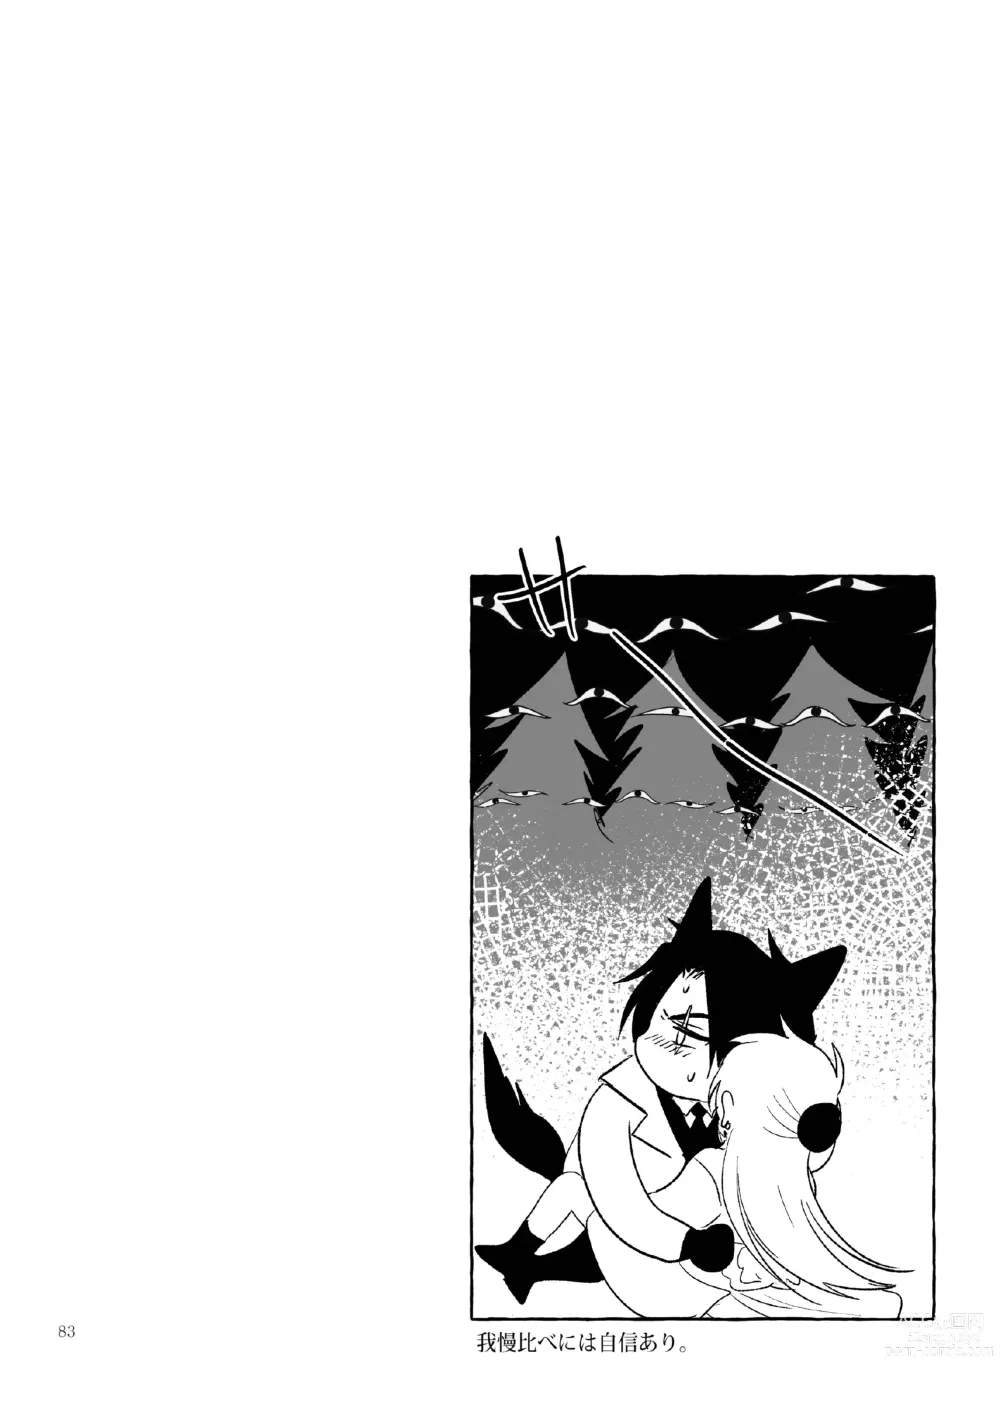 Page 83 of doujinshi Kπ ~Kouankeisatsu to Ikoku no Majo no Futari~